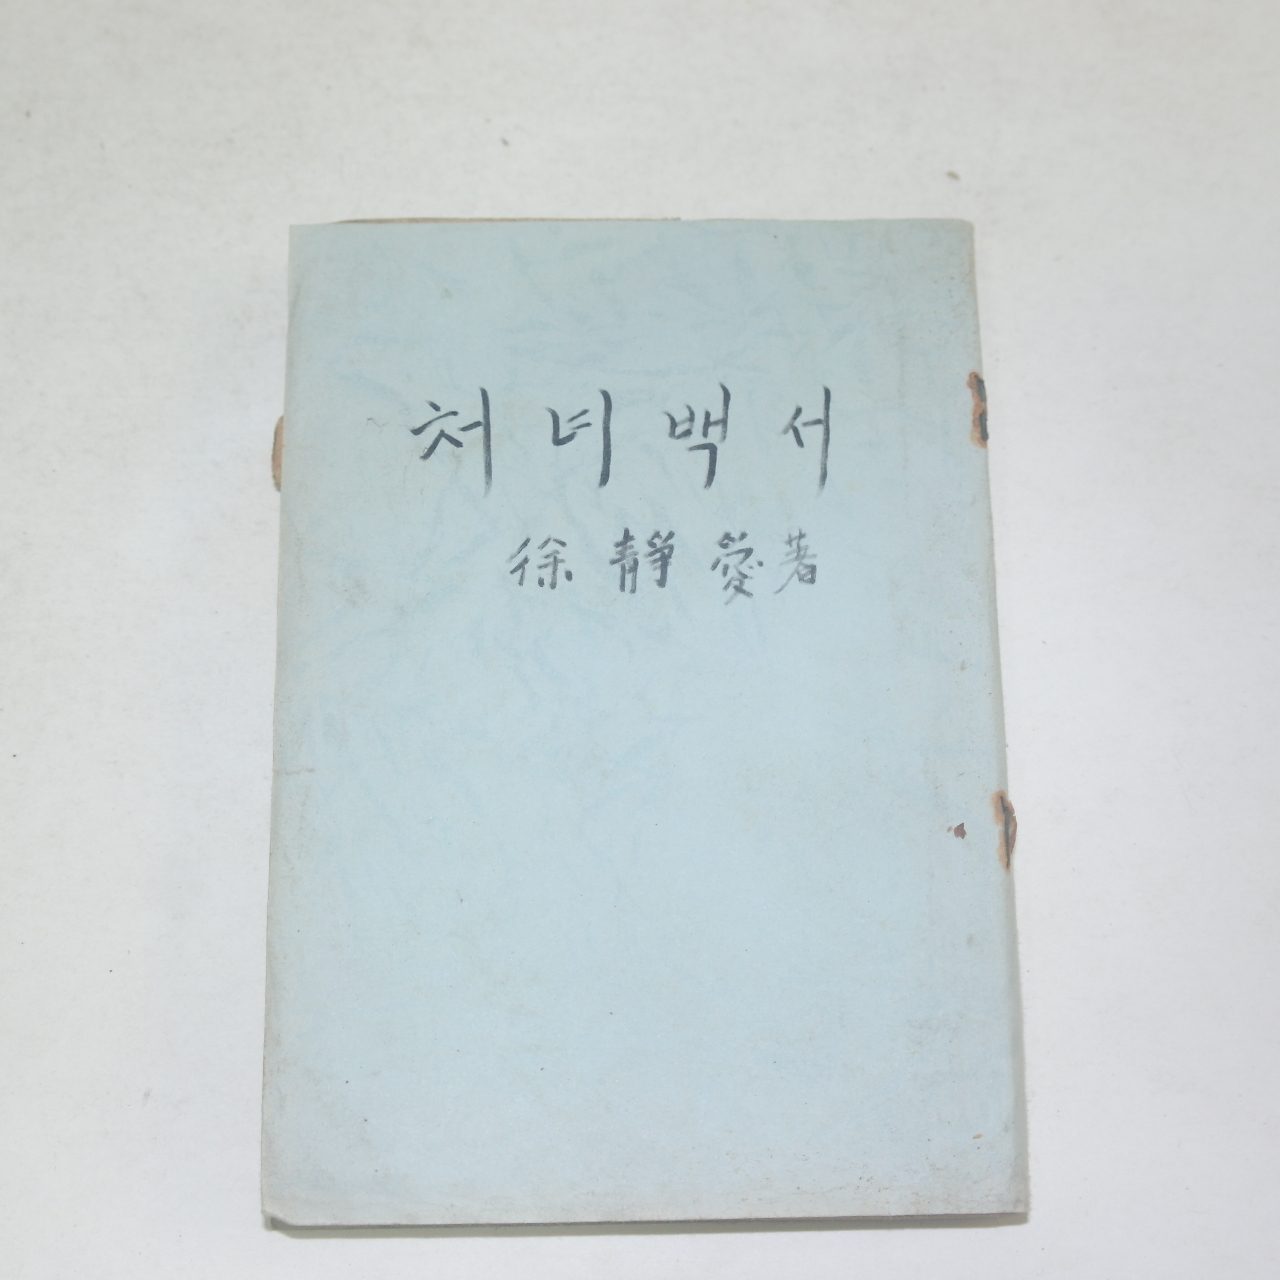 1954년 서정애(徐靜愛) 처녀백서(處女白書)